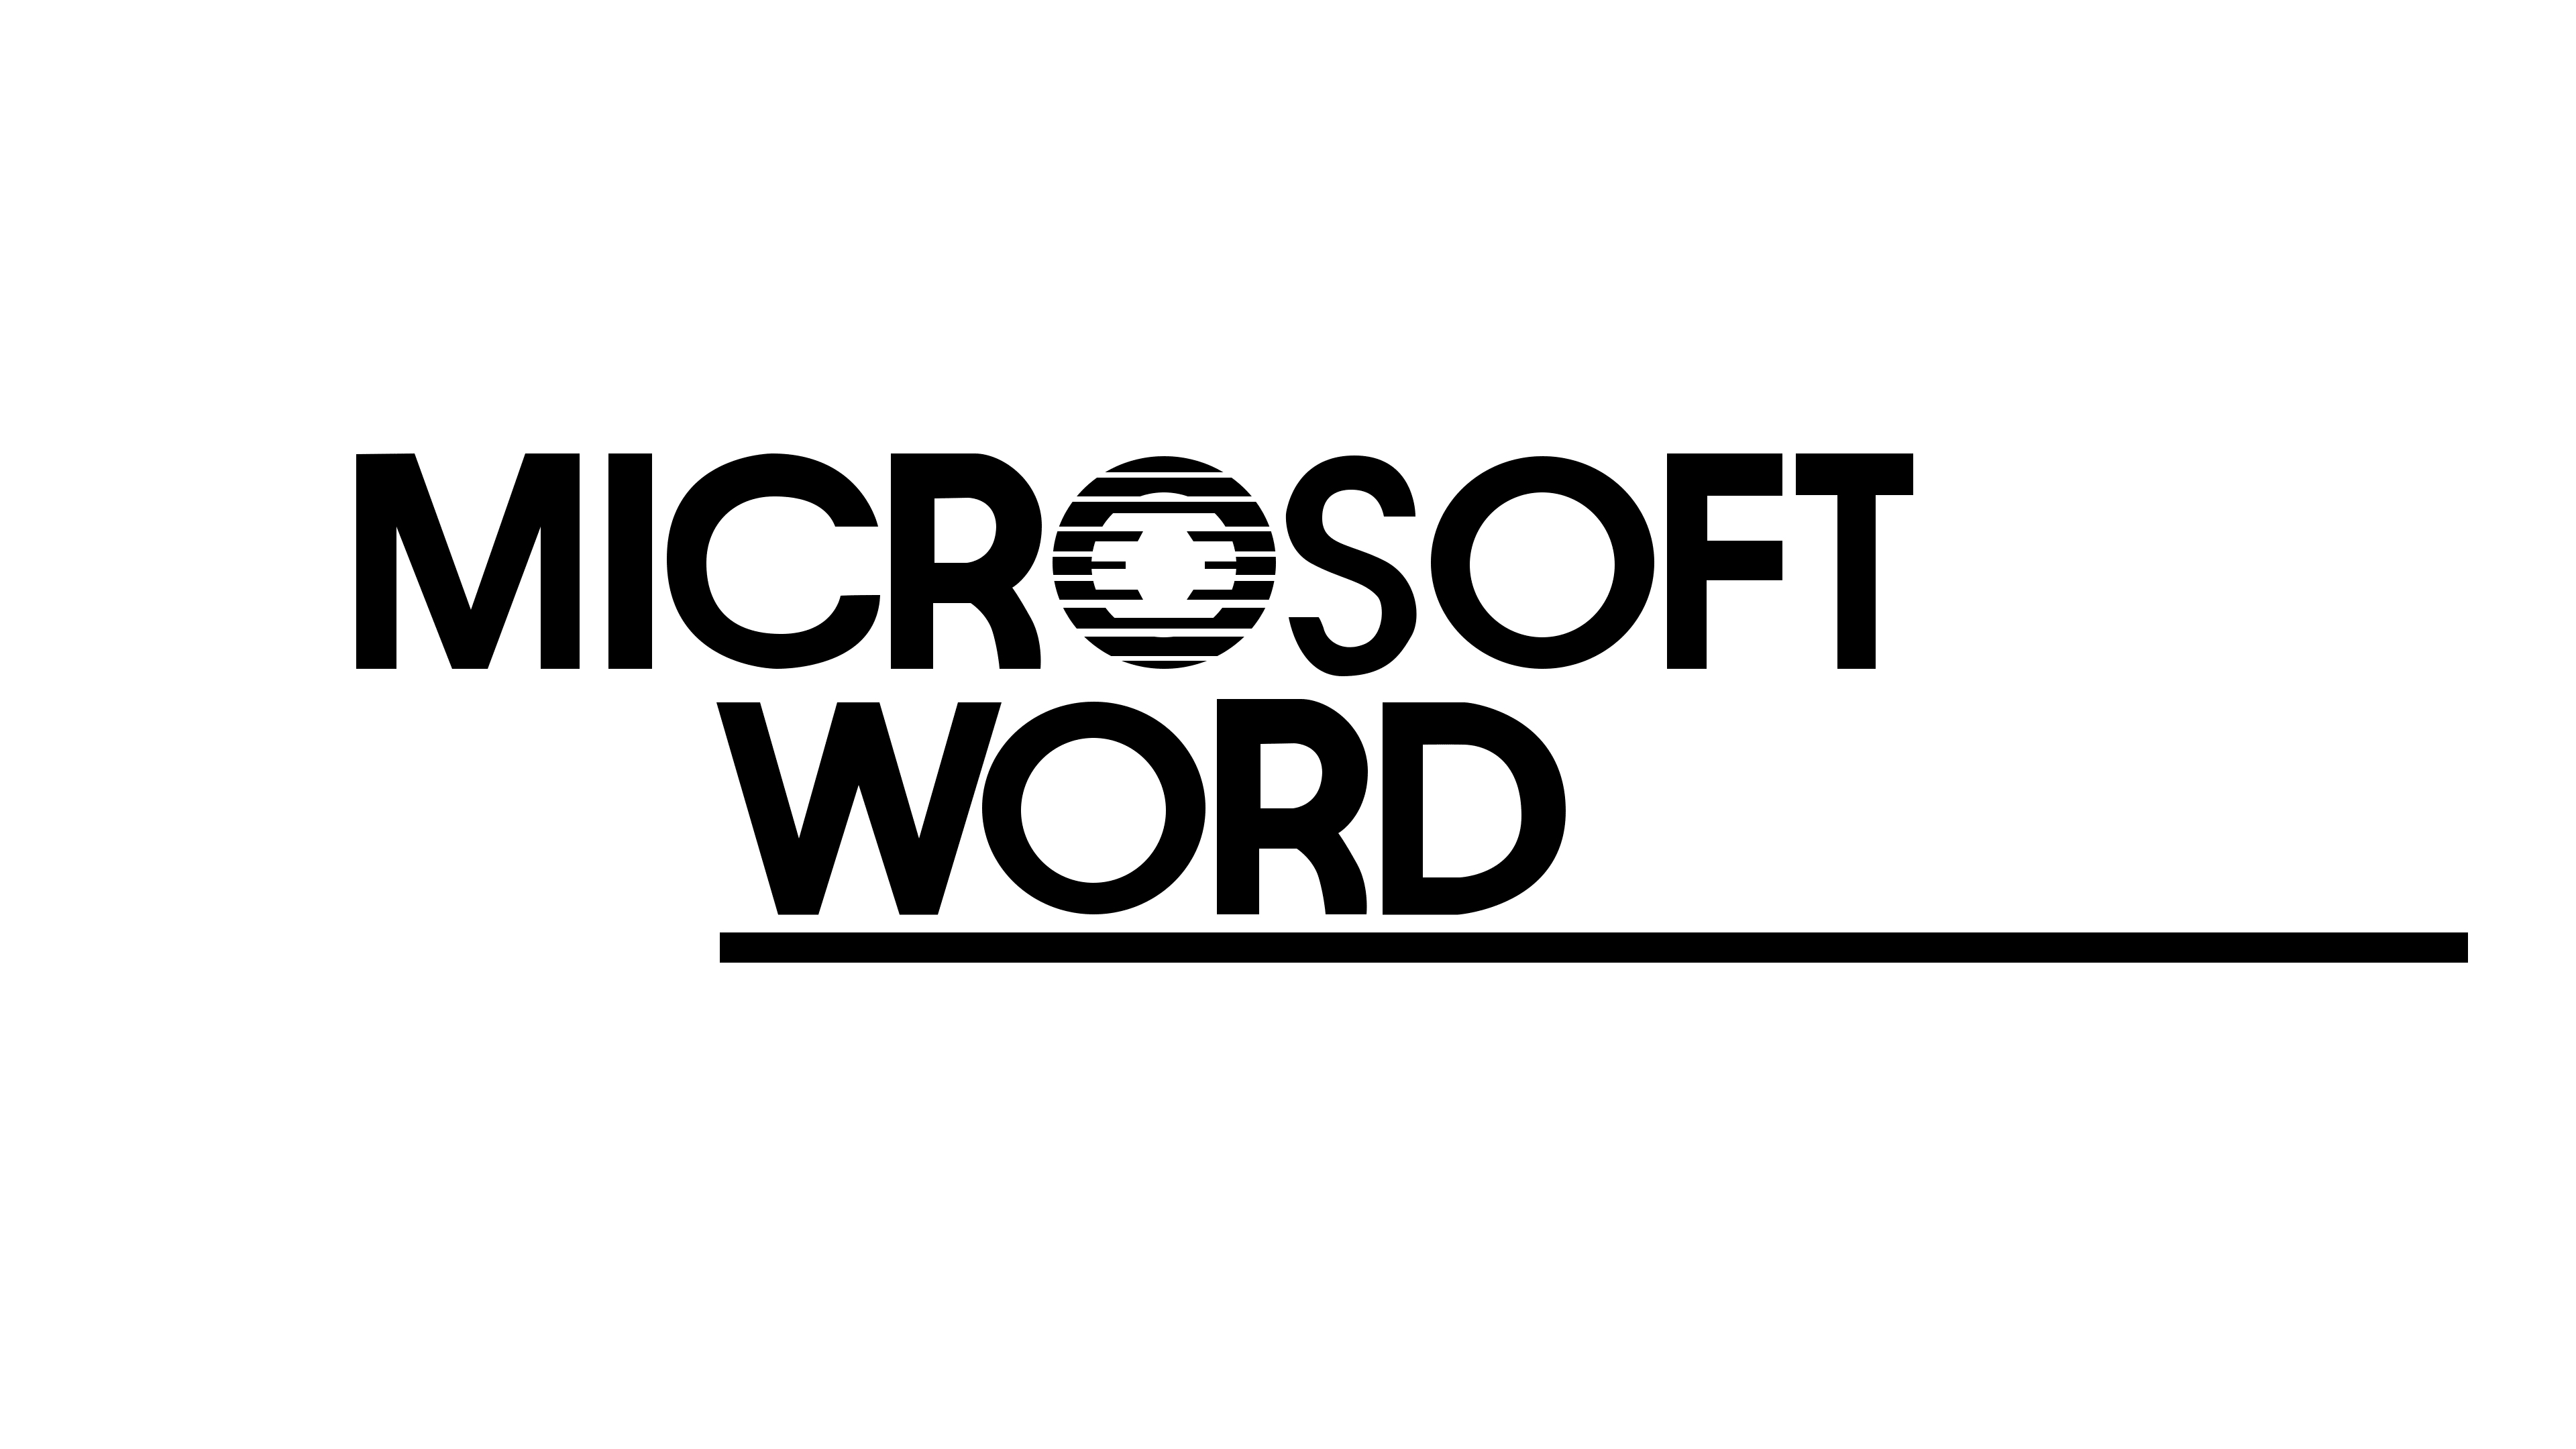 Thiết kế logo of microsoft word đặc biệt cho doanh nghiệp của bạn